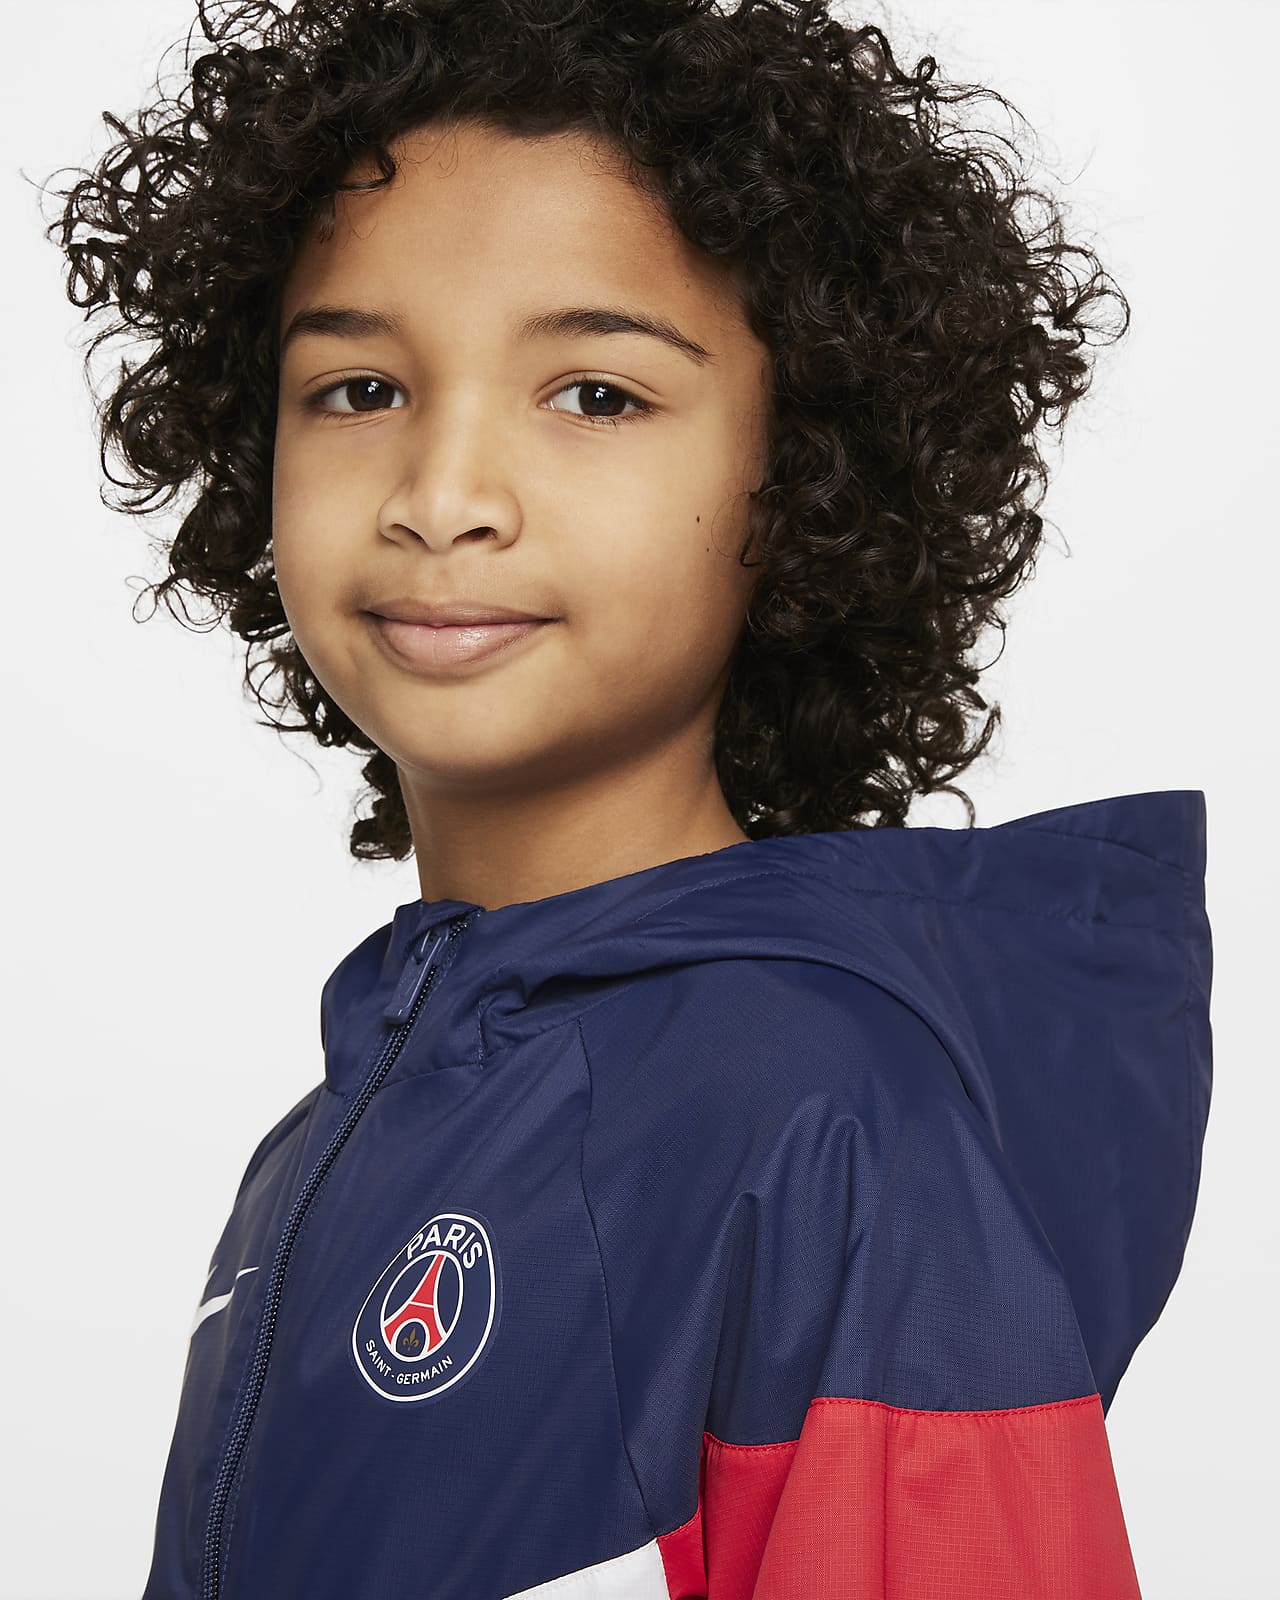 Paris Saint-Germain Older Kids' Hooded Jacket. Nike GB